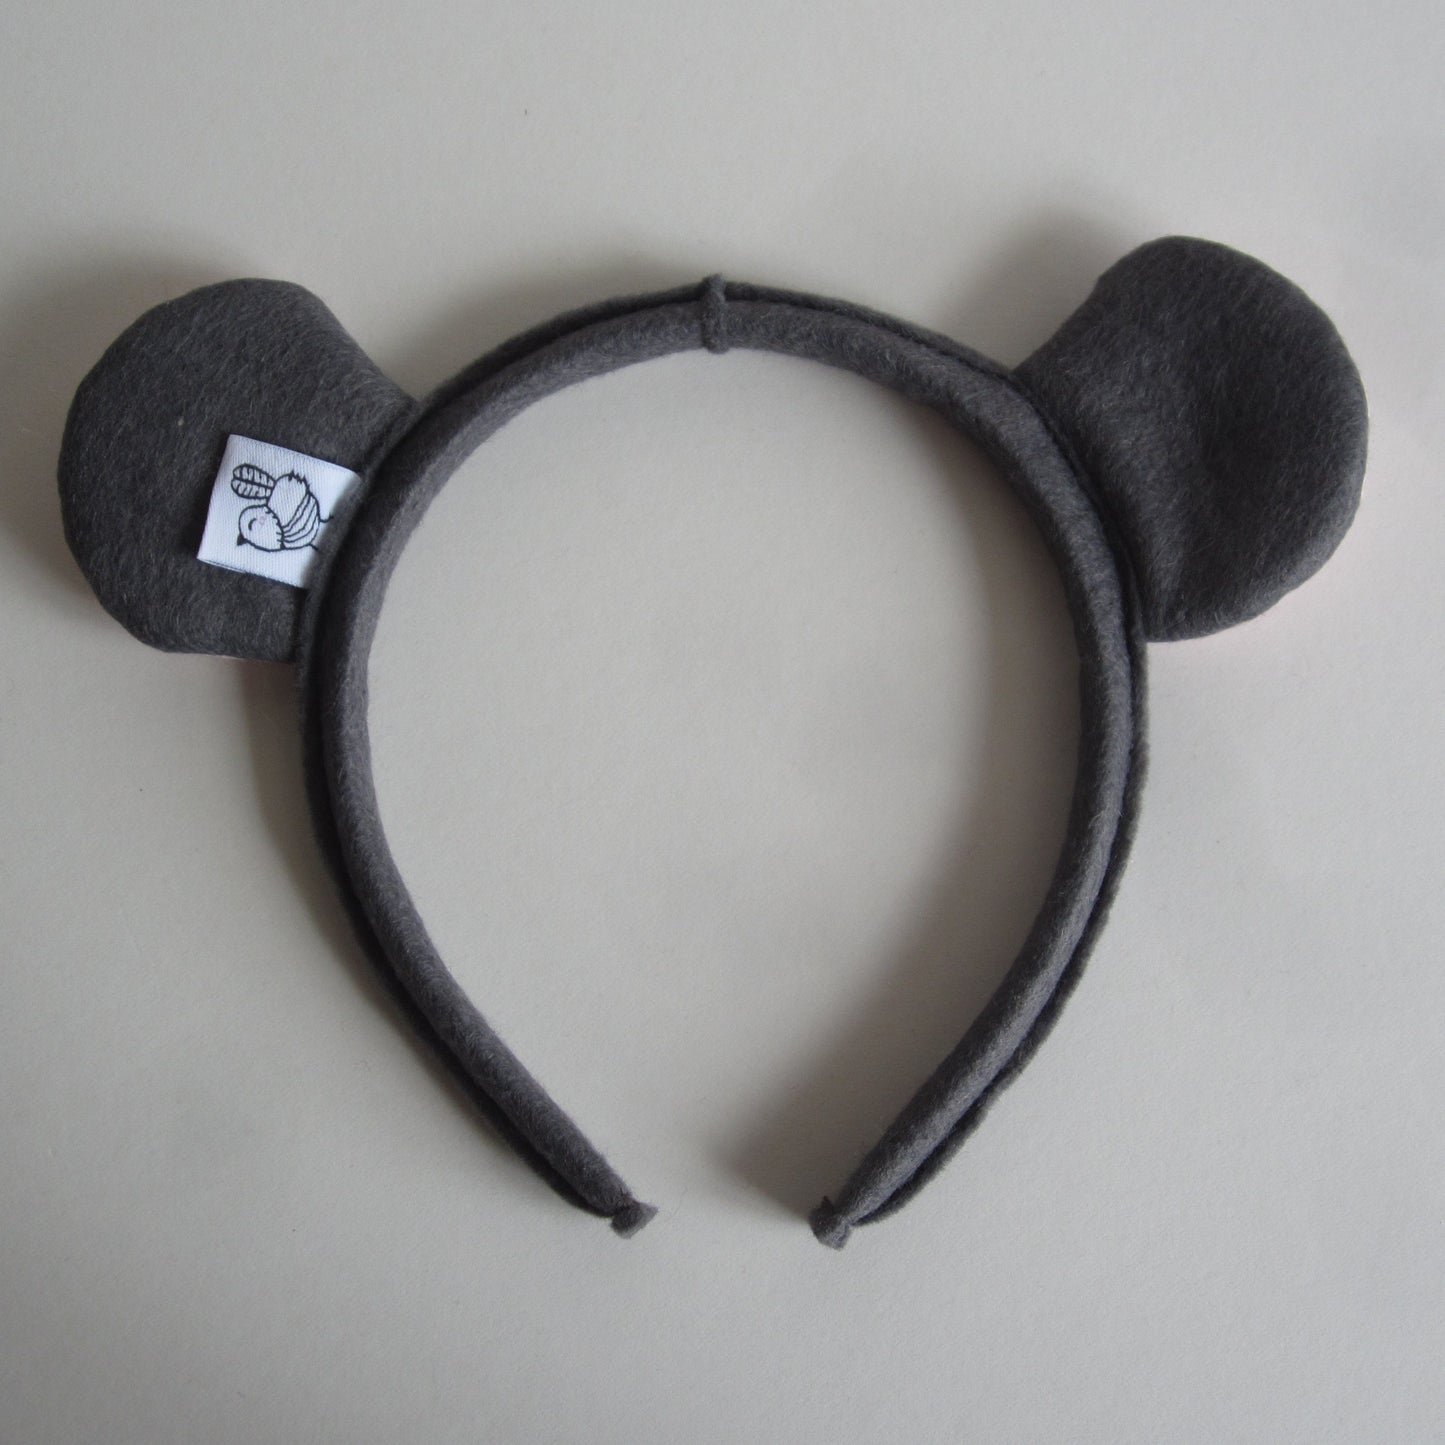 Mouse Ears Hairband Made of Dark Grey Felt